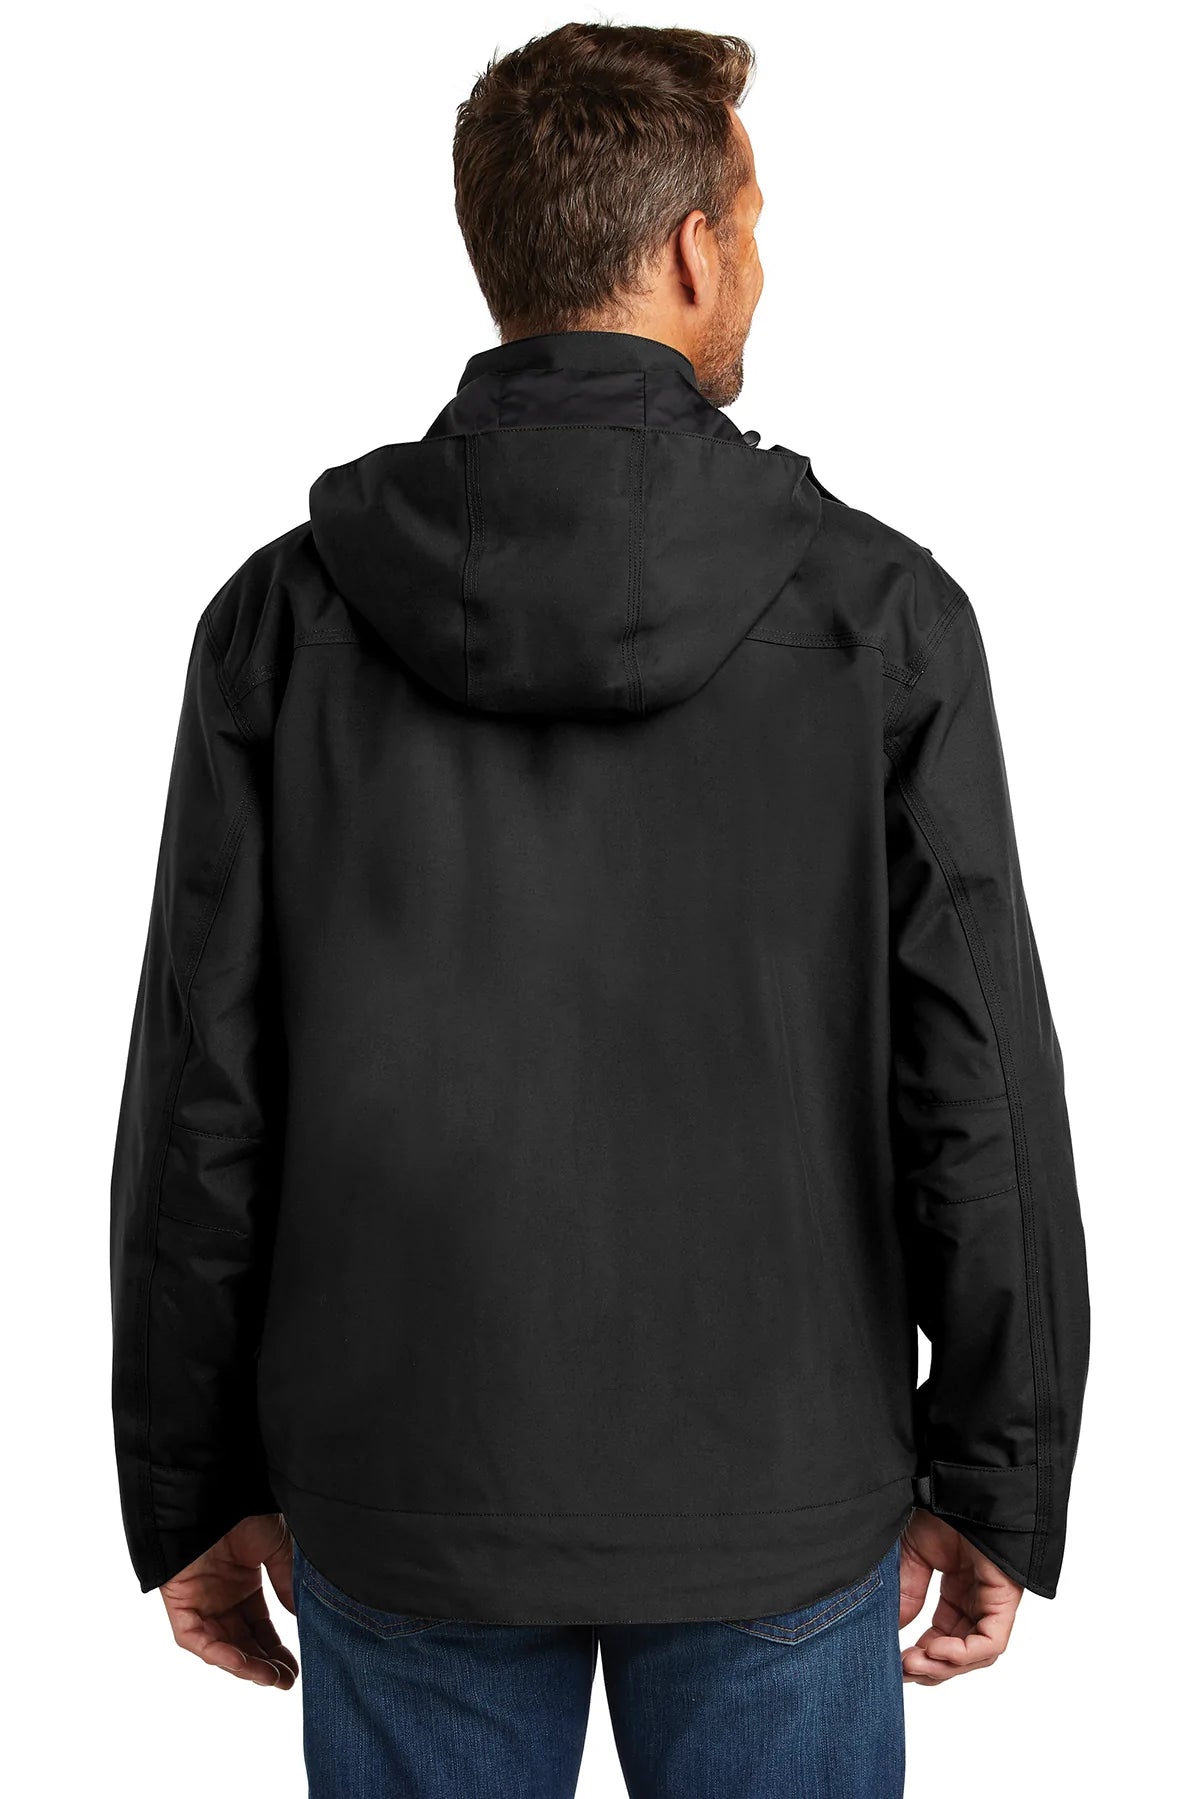 carhartt_ctj162 _black_company_logo_jackets